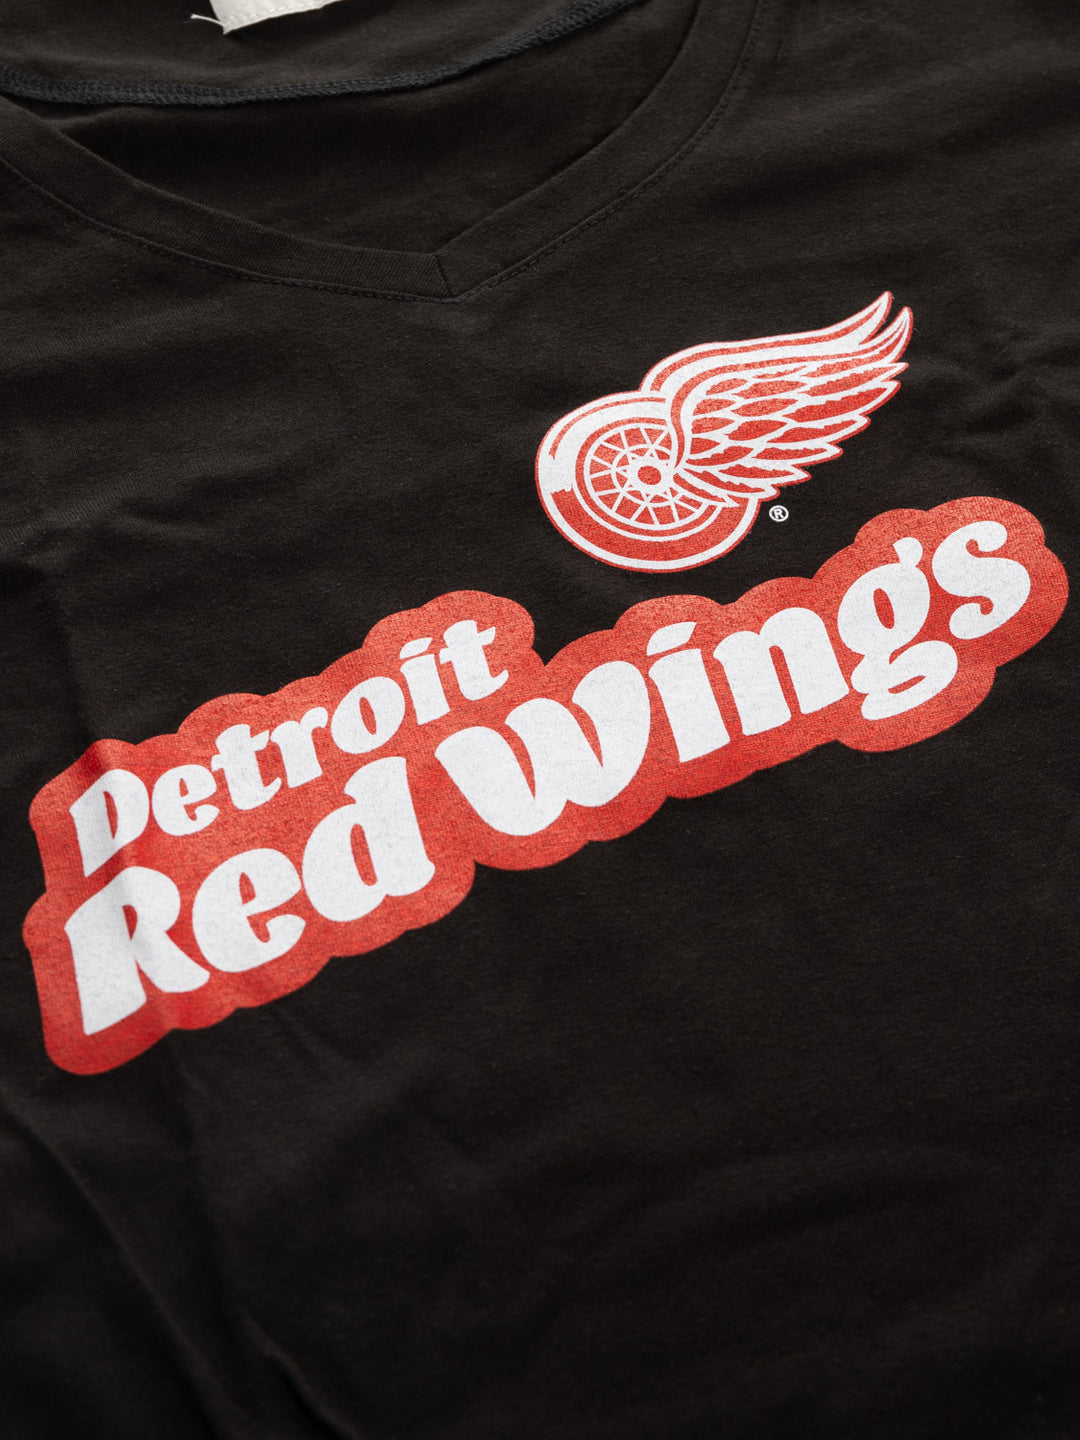 Official Licensed NHL Ladies' Retro Varsity Short Sleeve Vneck Tshirt--Detroit Red Wings